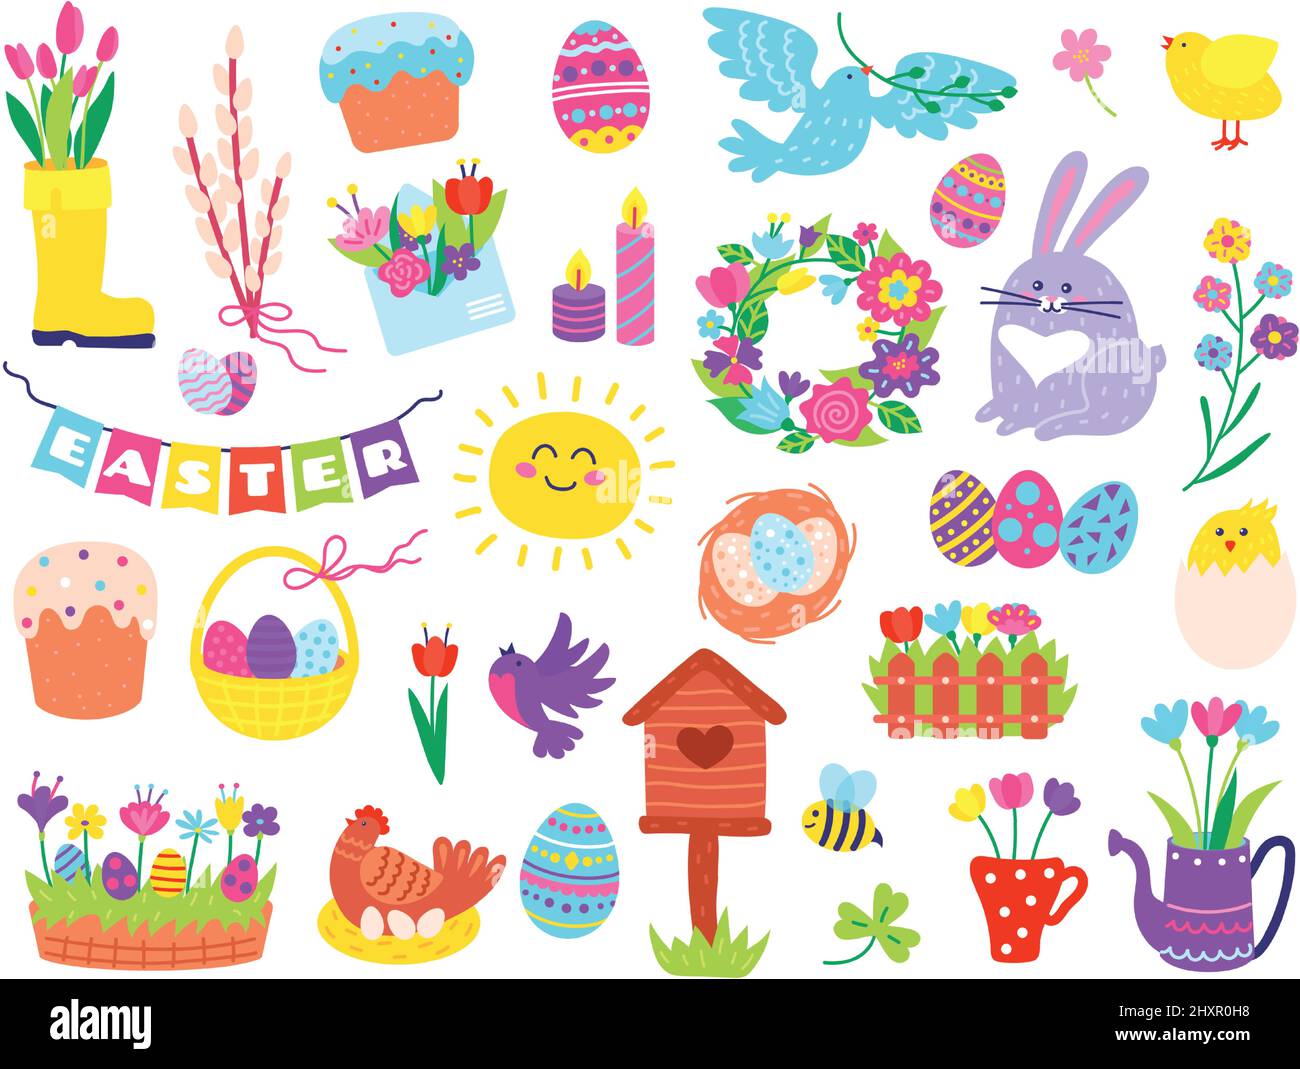 Elementi di pasqua carini, doodles primavera stagione disegnati a mano. Uova dipinte in cestino, coniglietto, fiori, uccelli, primavera vacanza doodle vettore set. Corona floreale, cazzo da cova, candele che bruciano Illustrazione Vettoriale